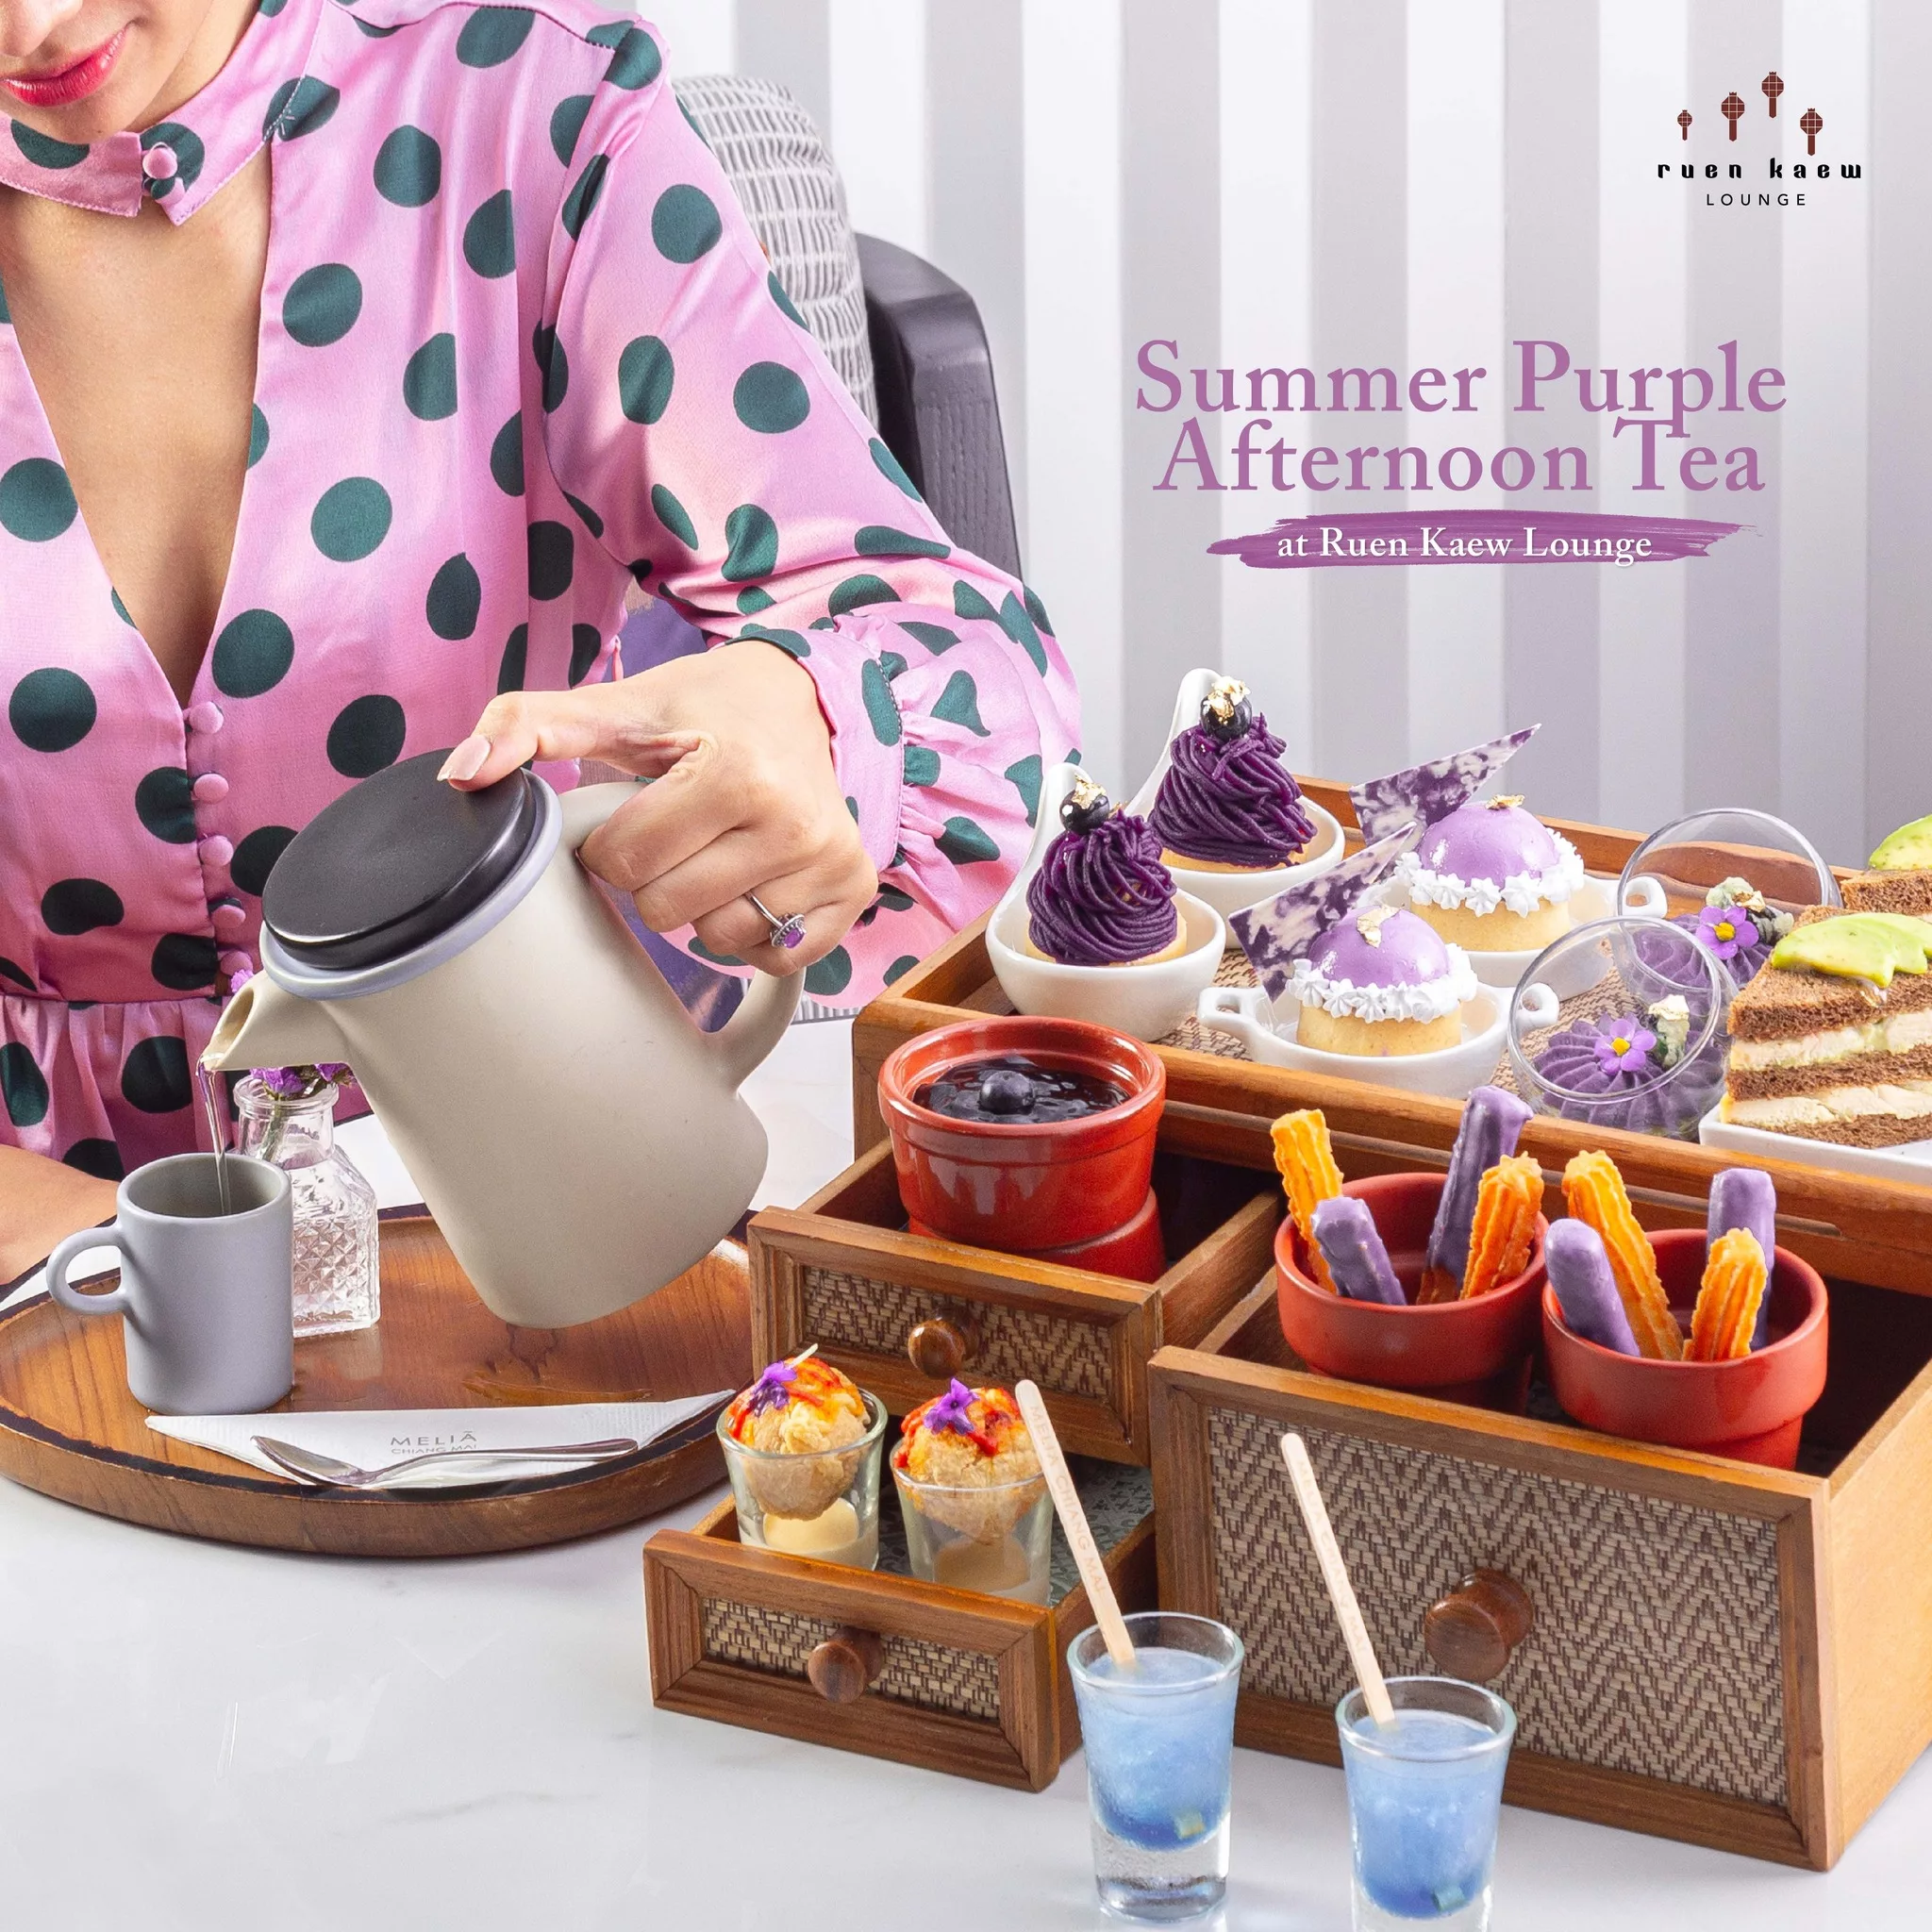 เมนูสุดพิเศษ Summer purple afternoon tea ที่ เรือนแก้ว เลาจน์ โรงแรมมีเลีย เชียงใหม่